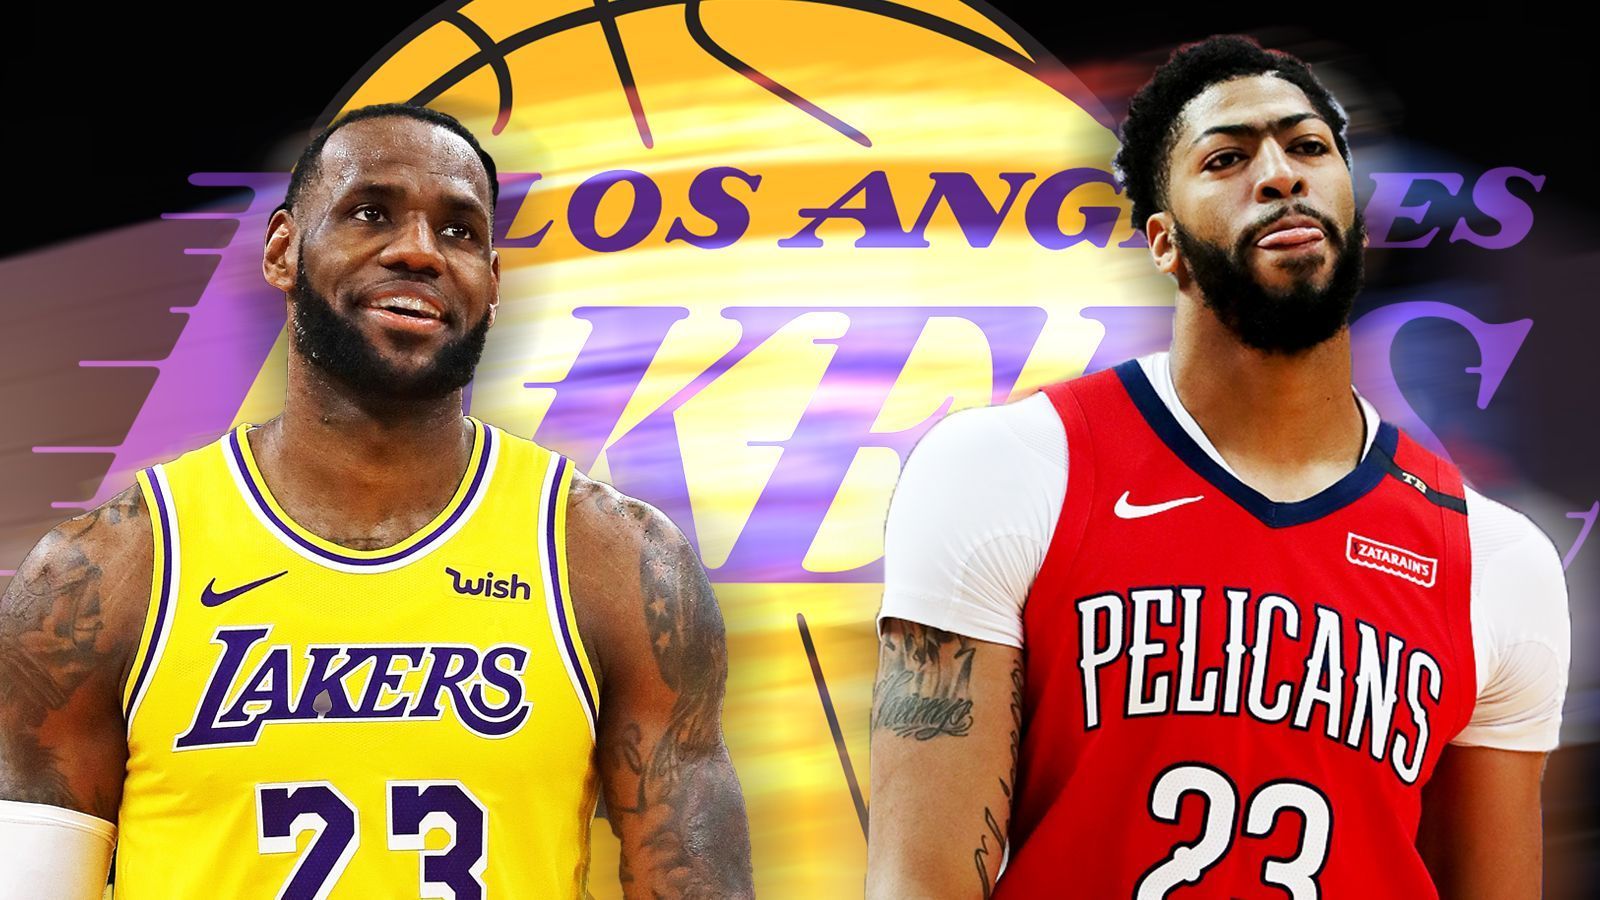 
                <strong>Nach Davis Trade: So könnten die Los Angeles Lakers in der Free Agency angreifen</strong><br>
                Nach einer monatelangen Hängepartie haben sich die Los Angeles Lakers und die New Orleans Pelicans endlich geeinigt und für den nächsten Blockbuster-Trade in der NBA gesorgt. Anthony Davis streift sich ab der kommenden Saison das Lakers-Trikot über und geht mit LeBron James auf Titeljagd. Durch den Trade haben die Lakers zwei der besten Spieler auf dem Planeten in ihren Reihen und gelten für die nächste Saison plötzlich als heißer Anwärter auf die Larry O'Brien Trophy. Laut den Quoten von "Super Book USA" gilt L.A. sogar als Topfavorit. Allerdings haben die Kalifornier noch lange nicht genug. Die Free-Agency-Class 2019 ist mit zahlreichen Top-Stars gespickt und die Lakers träumen davon, noch einen weiteren großen Namen zu verpflichten und ein spektakuläres Supertrio zu formen. Dabei gibt es allerdings ein gravierendes Problem. ran.de rekapituliert den Davis-Trade und zeigt die Moves, die auf den Blockbuster-Trade folgen könnten.   Mehr zum Davis-Trade und zur Free Agency in der NBA gibt es heute Nacht ab 0 Uhr auf ProSieben MAXX im US-Sport-Magazin "Locker Room". 
              